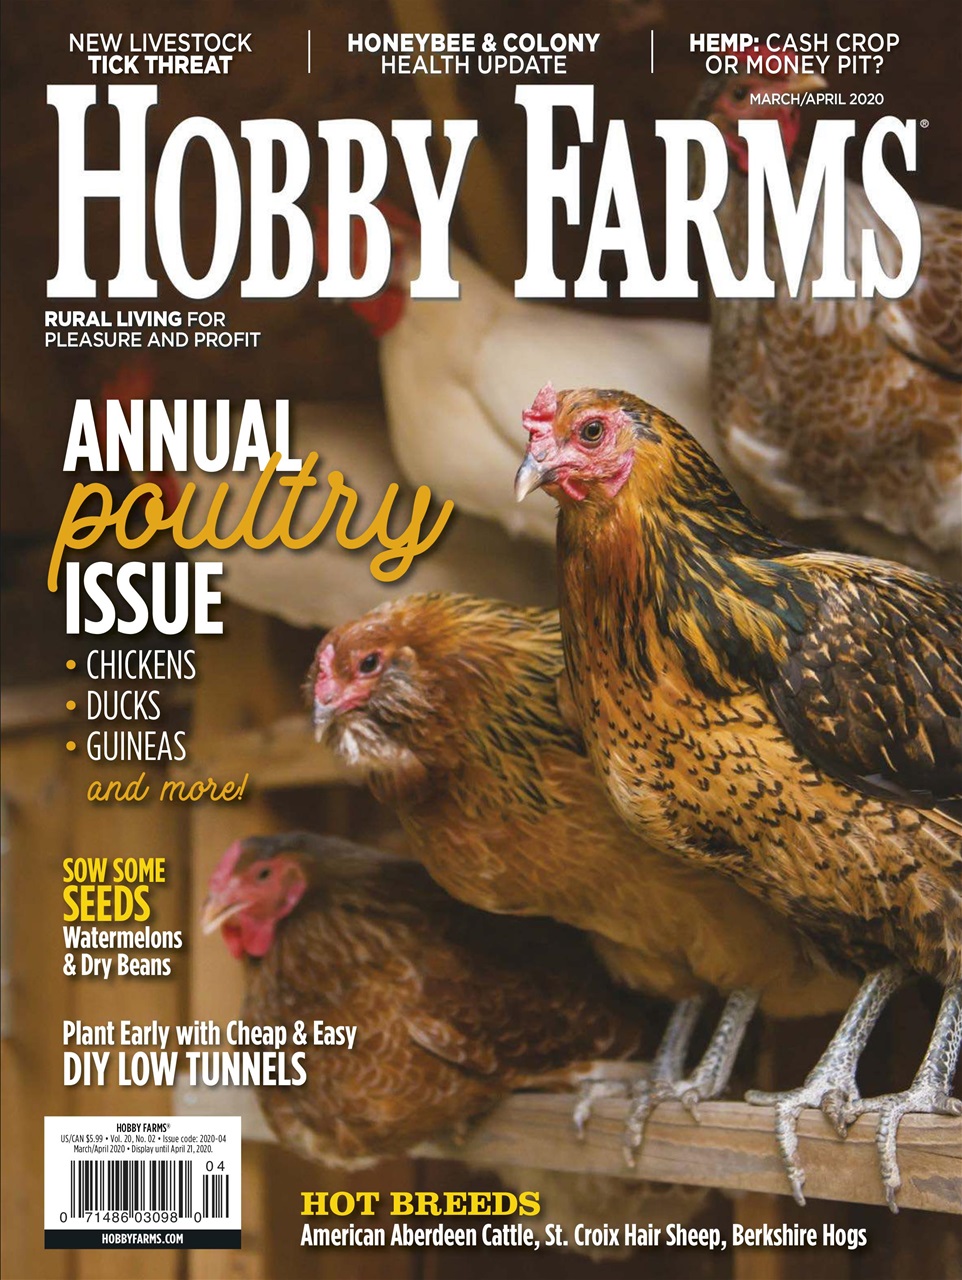 texas hobby farm insurance